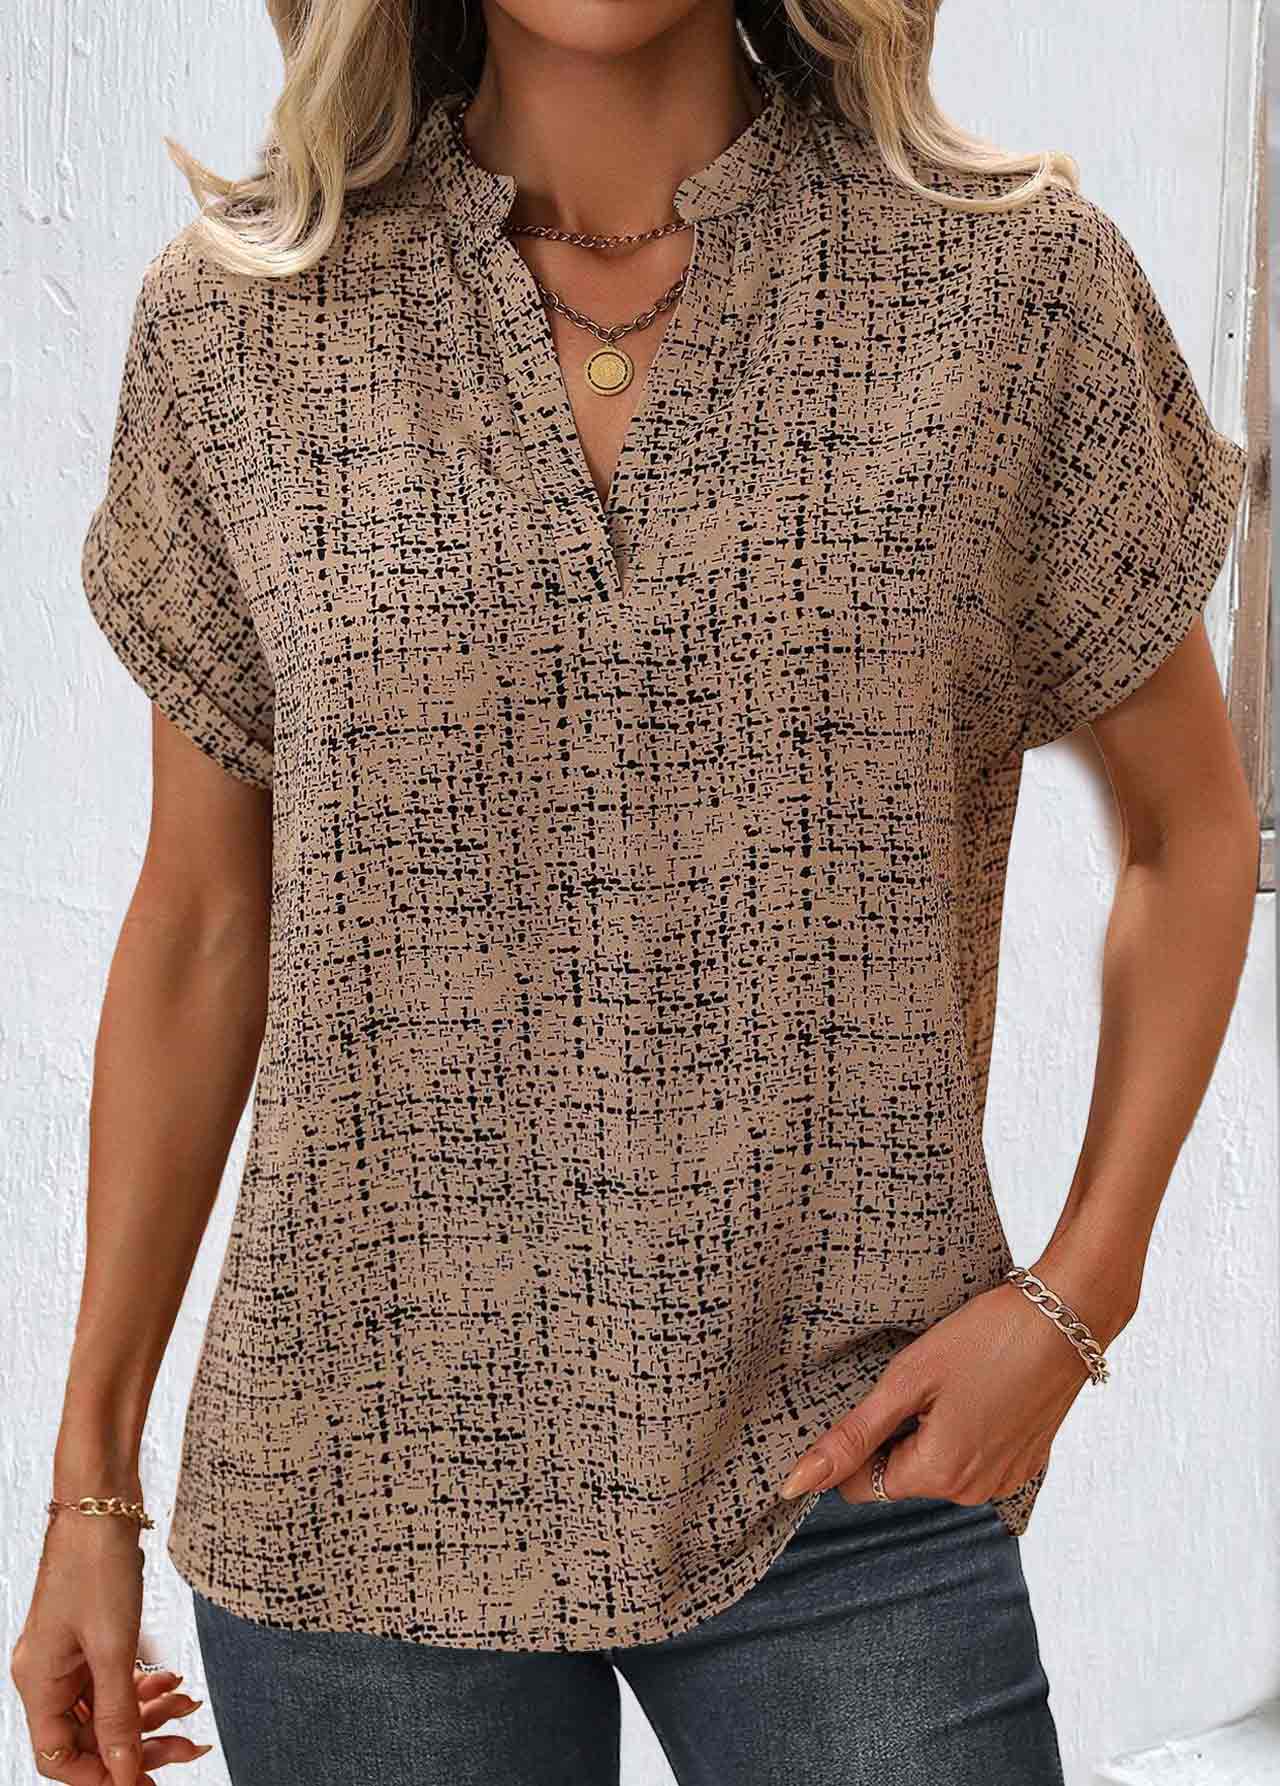 Kurzärmlige Rotita-Bluse mit geteiltem geometrischem Print in hellem Kaffeebraun